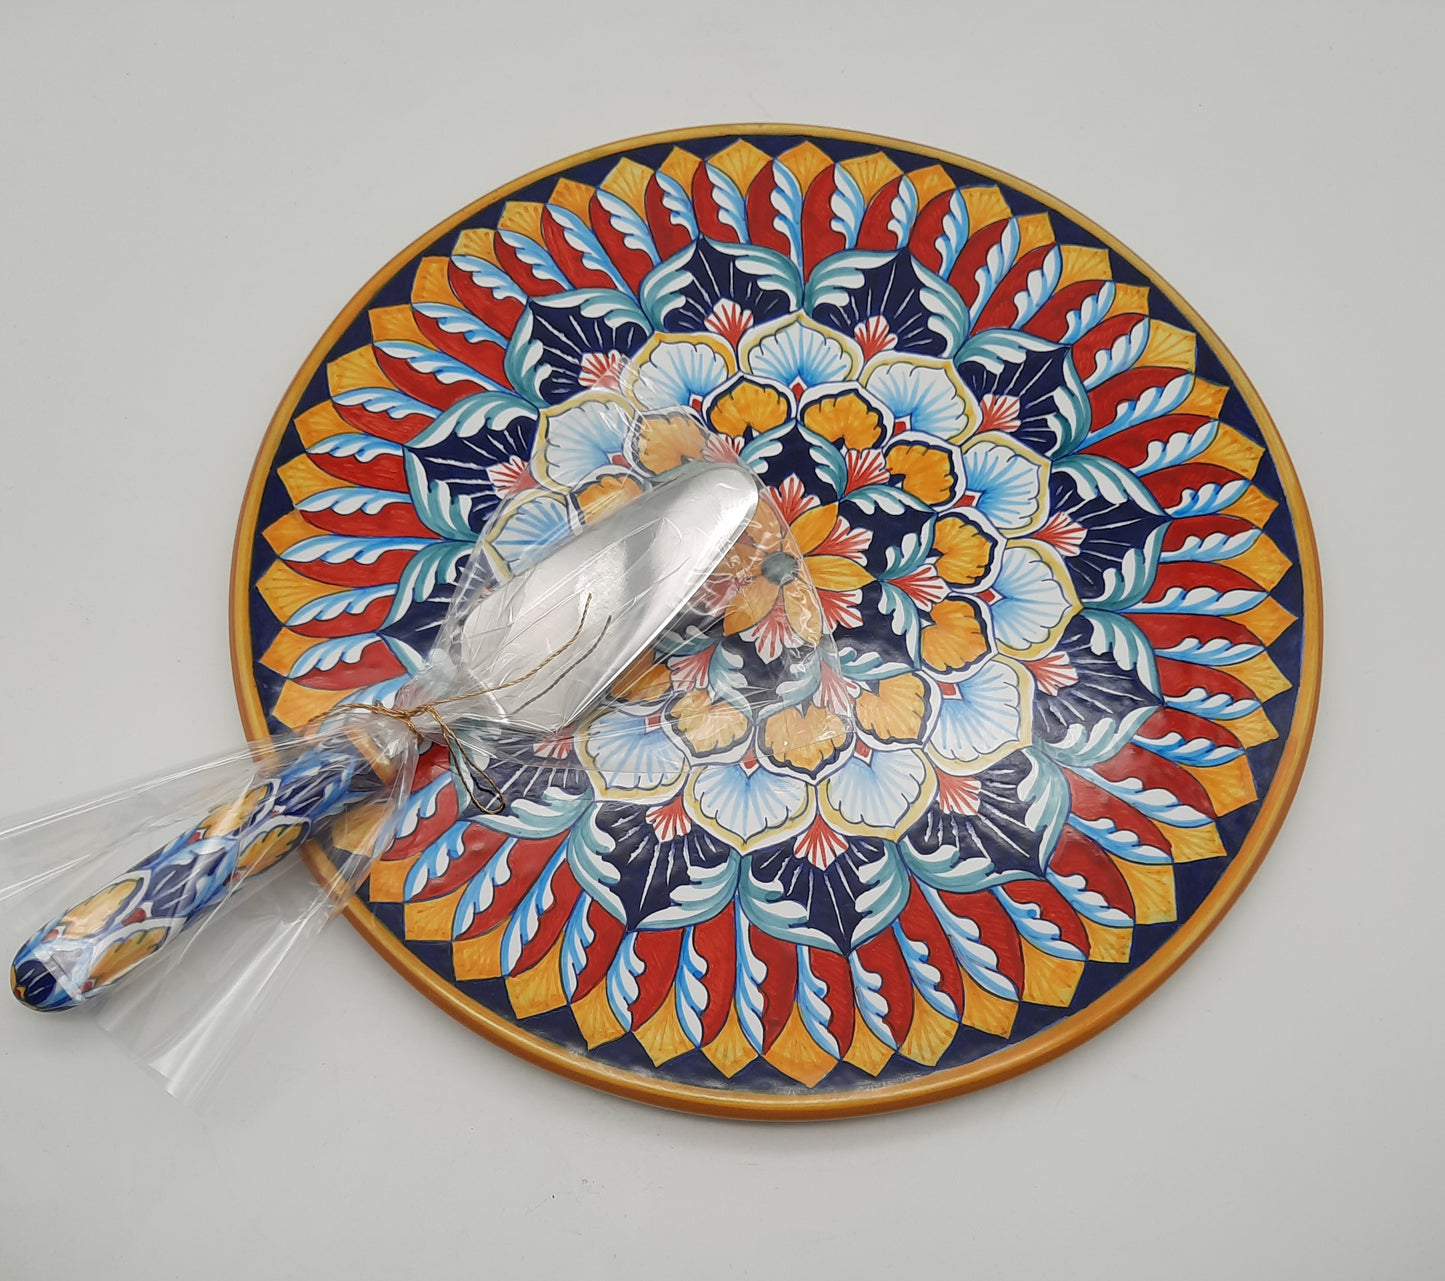 Disco portadolce cm 33 con Vario Geometrico. Dipinto a mano in ceramica ideale come tagliere per affettati e formaggi o dolci